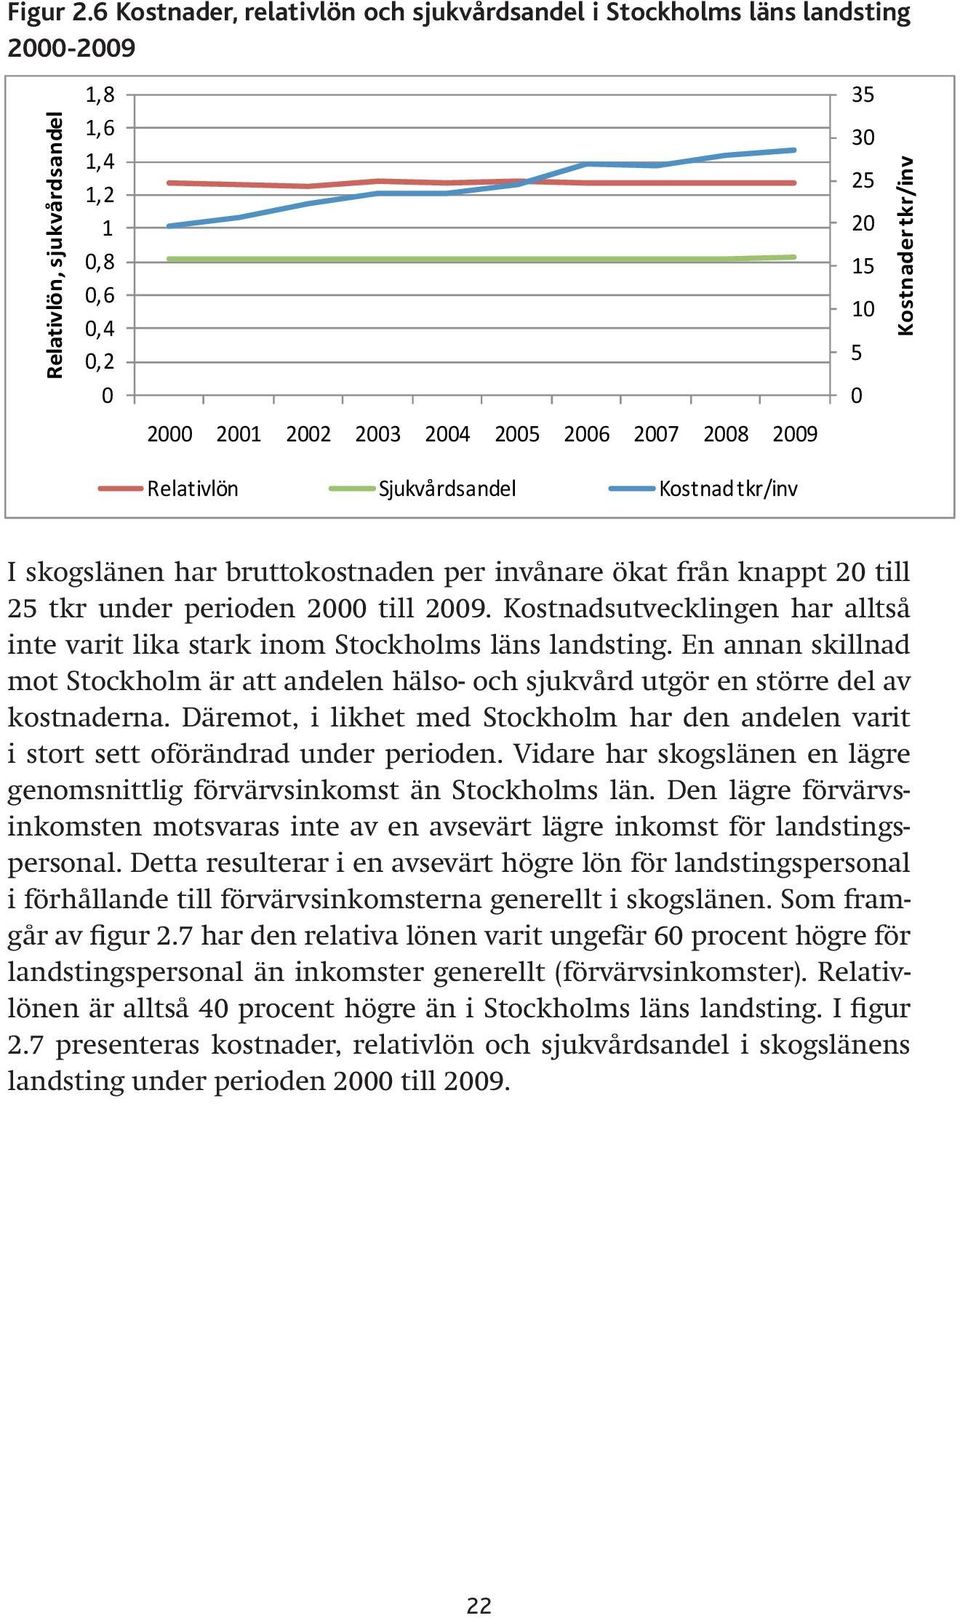 perioden 20 till 2000 25 tkr till 2009. under Kostnadsutvecklingen perioden 2000 till har alltså 2009. inte Kostnadsutvecklingen varit lika stark inom Stockholms har alltså läns landsting.